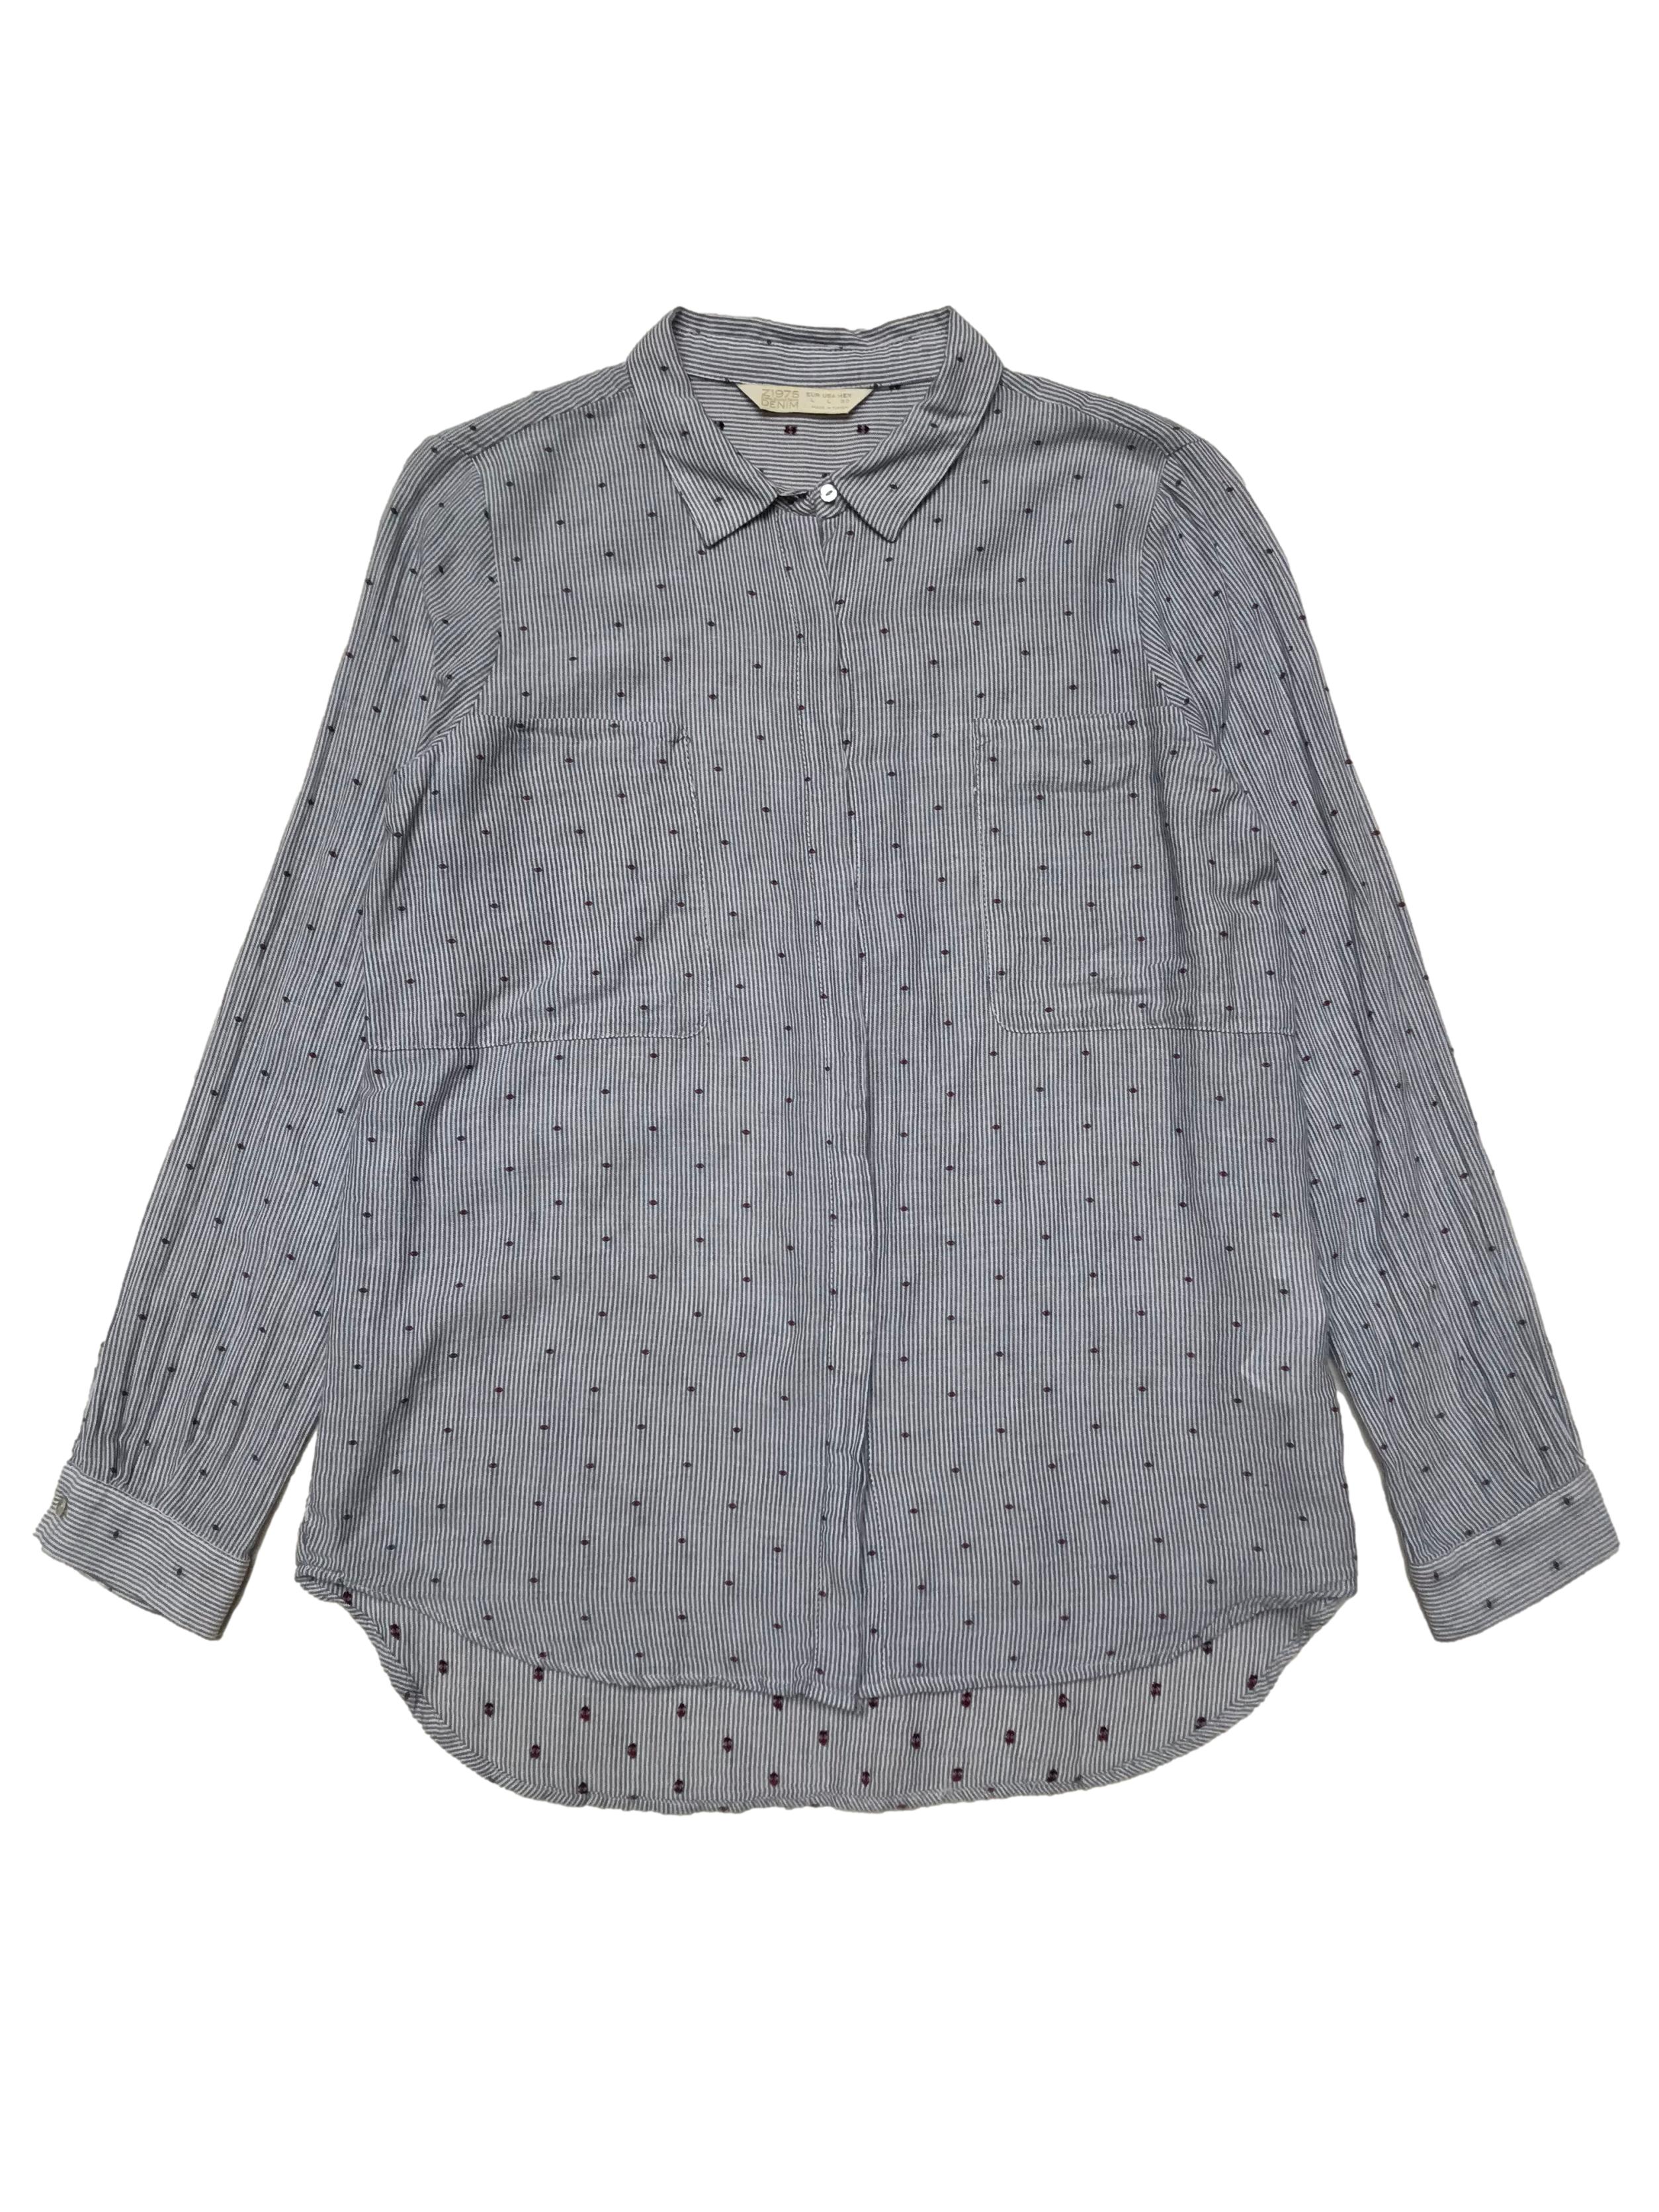 Blusa Zara de algodón a rayas con bordado guinda de circulitos, botones delanteros, bolsillos en el pecho y corte suelto. Busto 104cm Largo 65-70cm